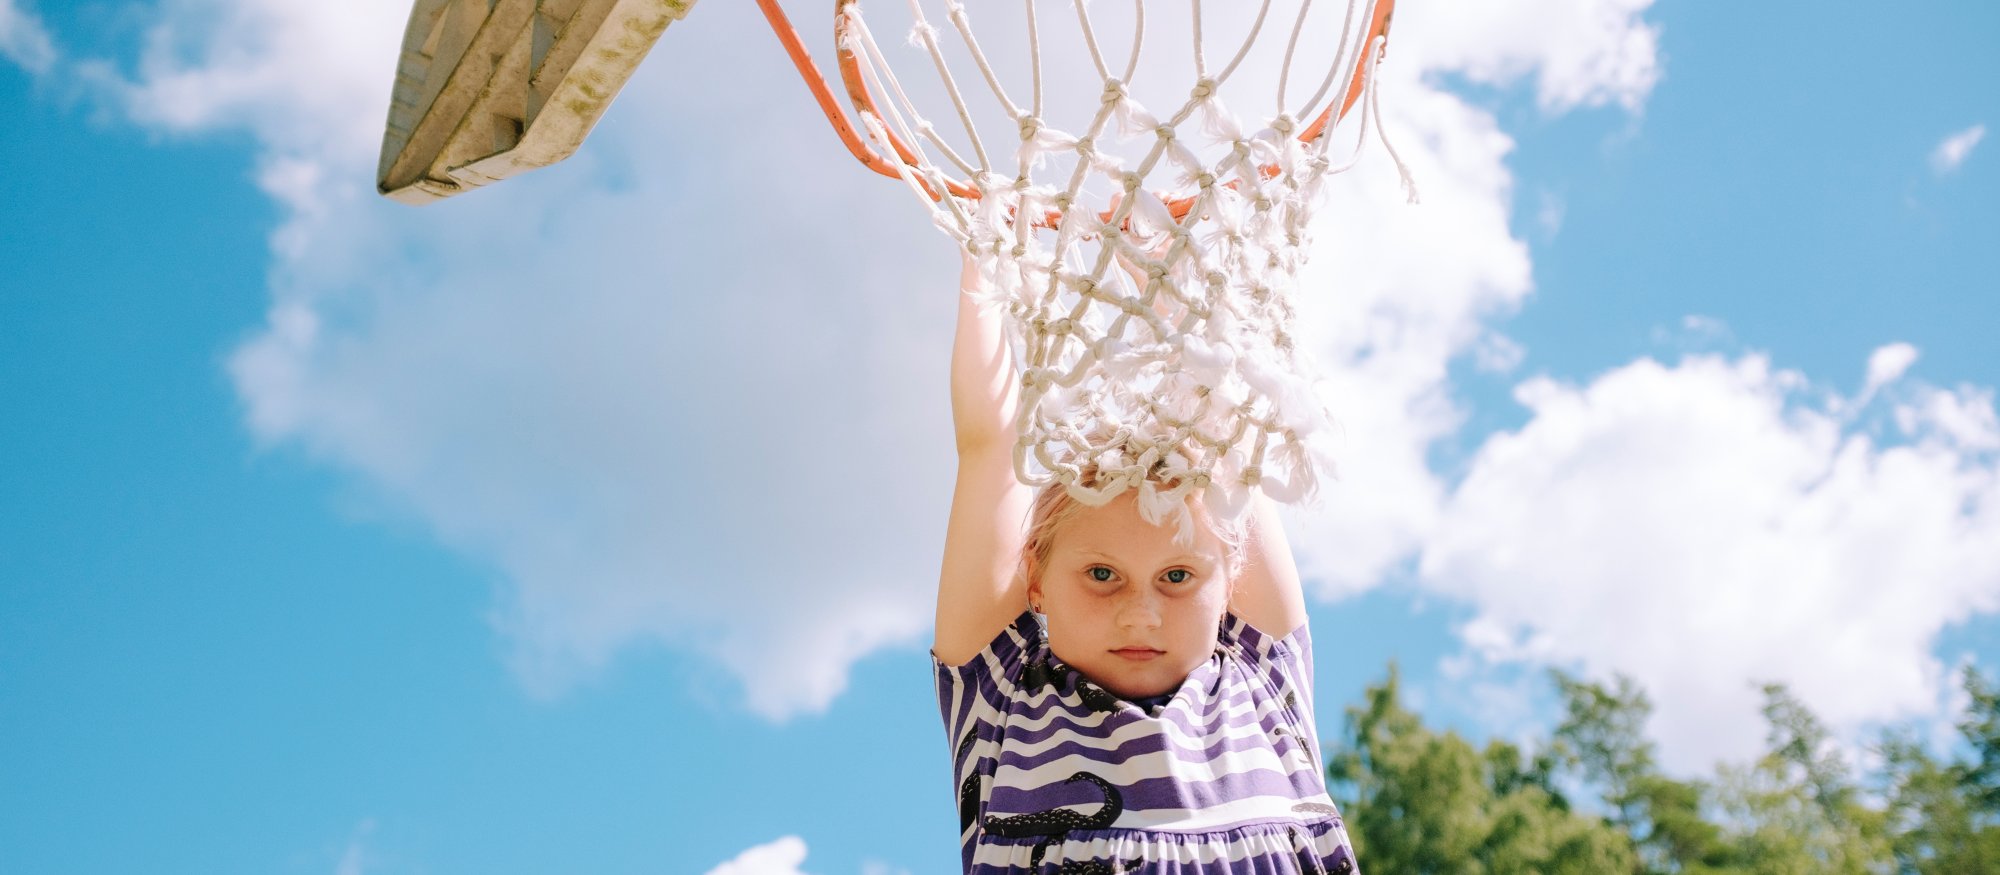 Flicka hänger i basketkorg